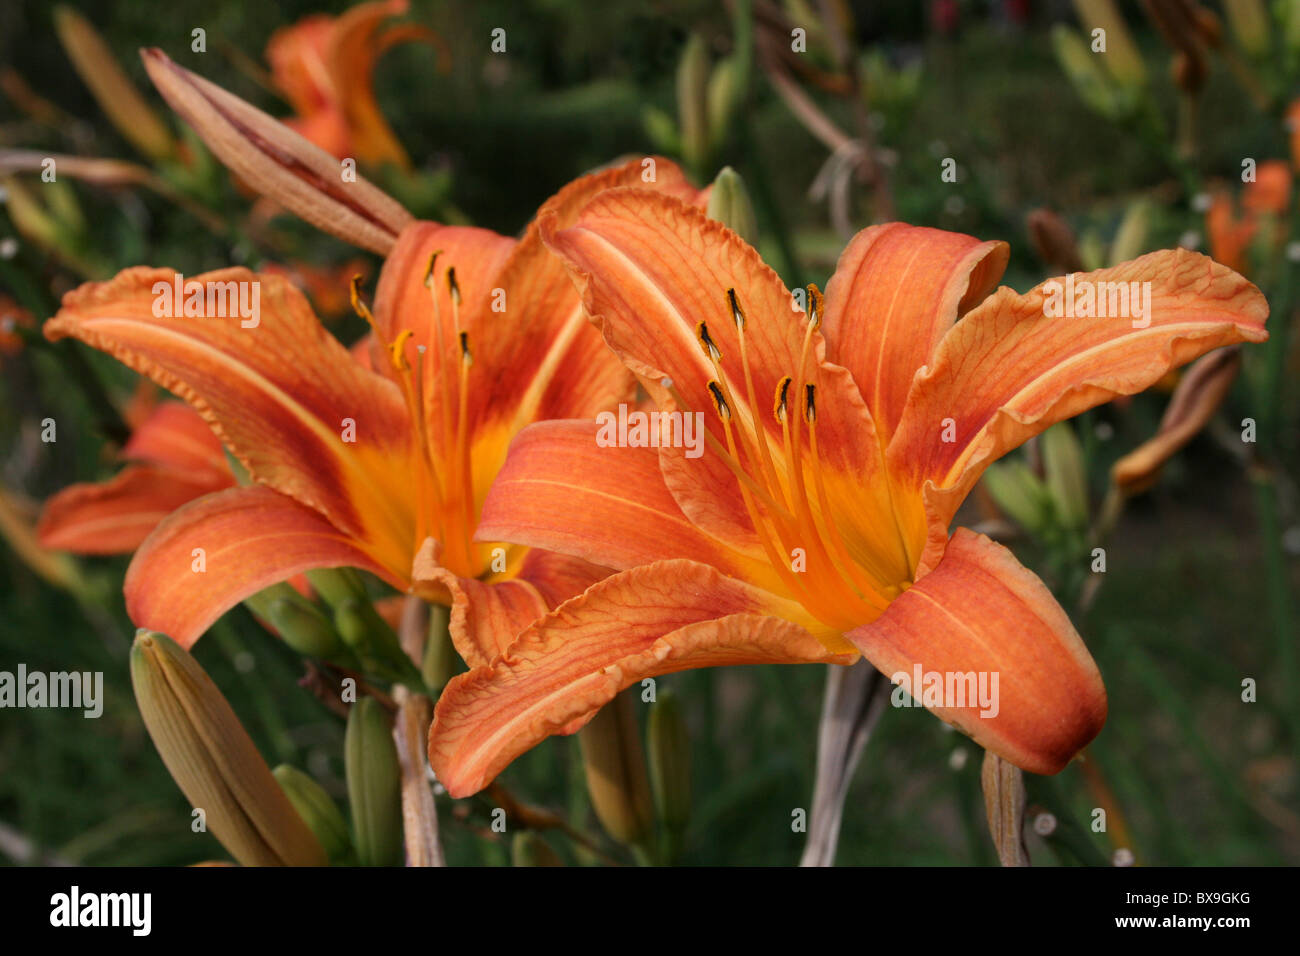 Orange Coloured Day Lily Hemerocallis Taken at Wendo Genet, Ethiopia Stock Photo